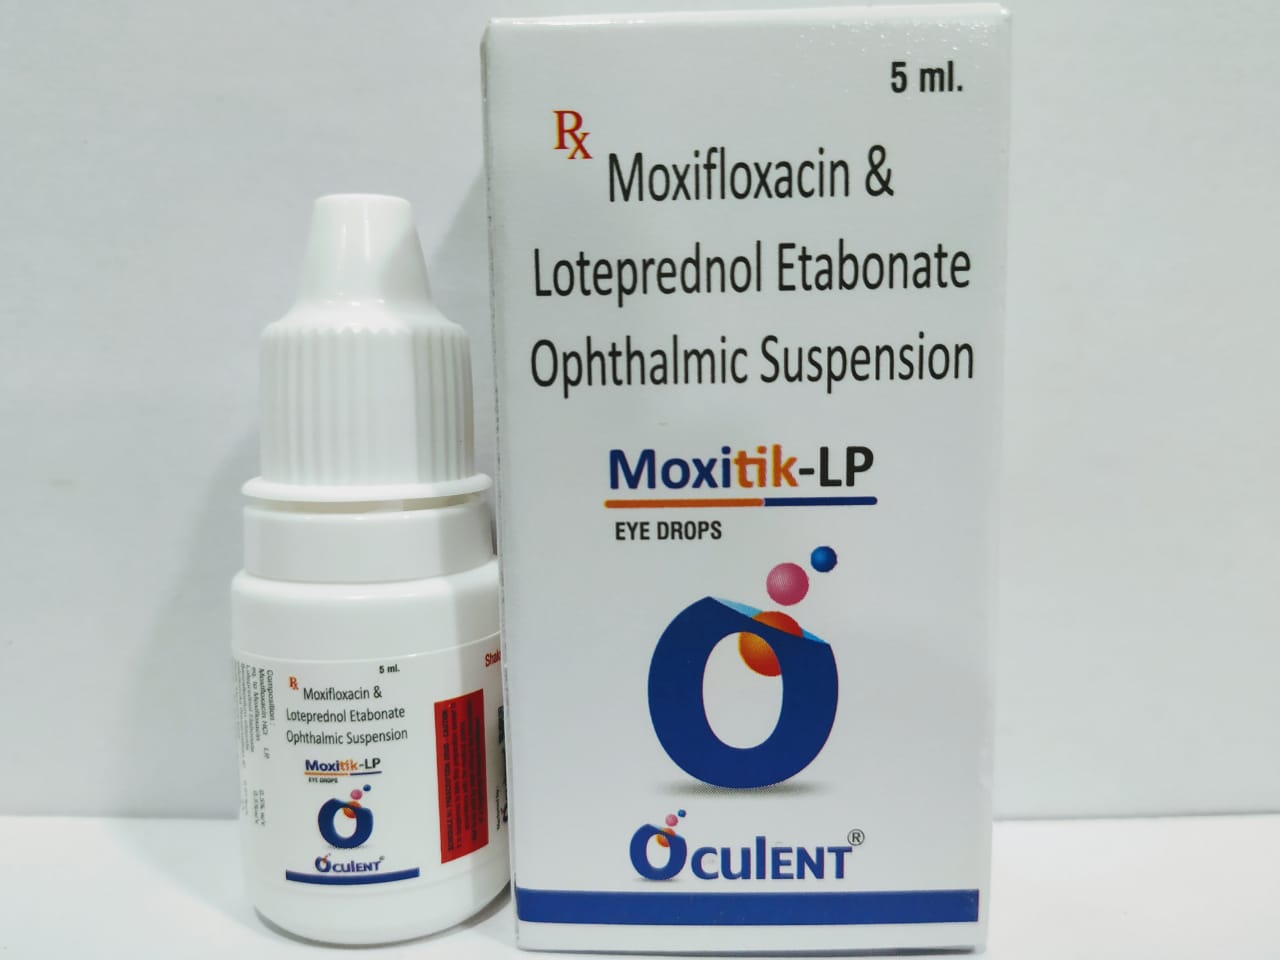 Moxitik-LP | Moxifloxacin HCl 0.5% + Loteprednol Etabonate 0.5%